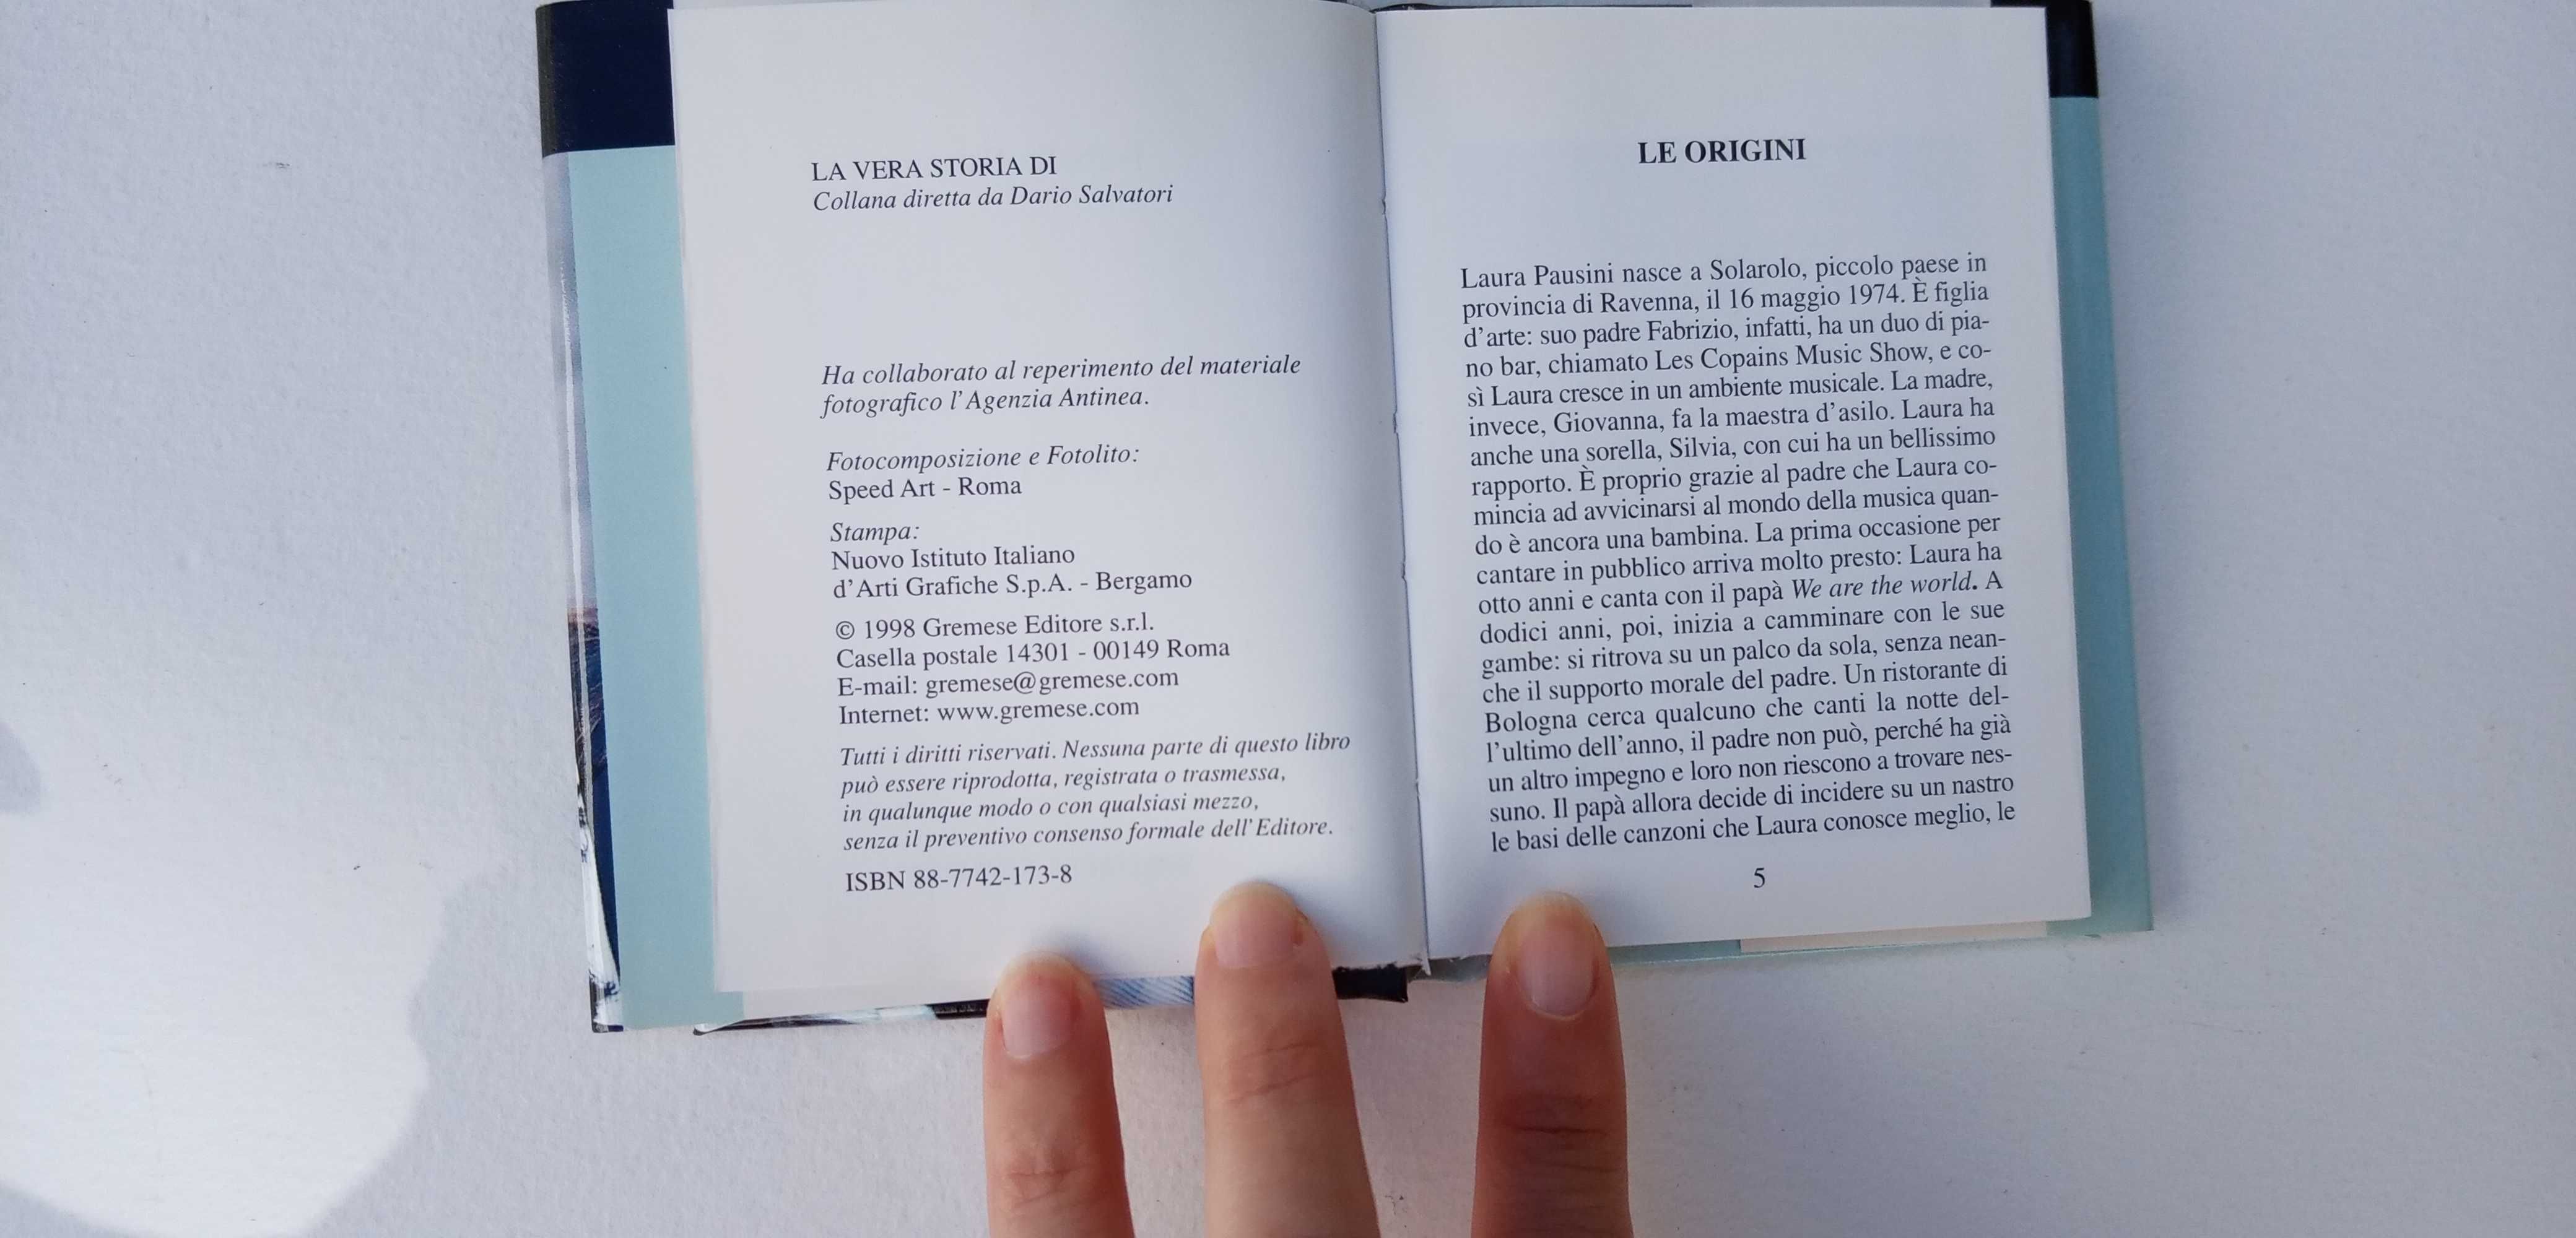 Livrinho raro La vera storia di Laura Pausini di Isabella Panizza